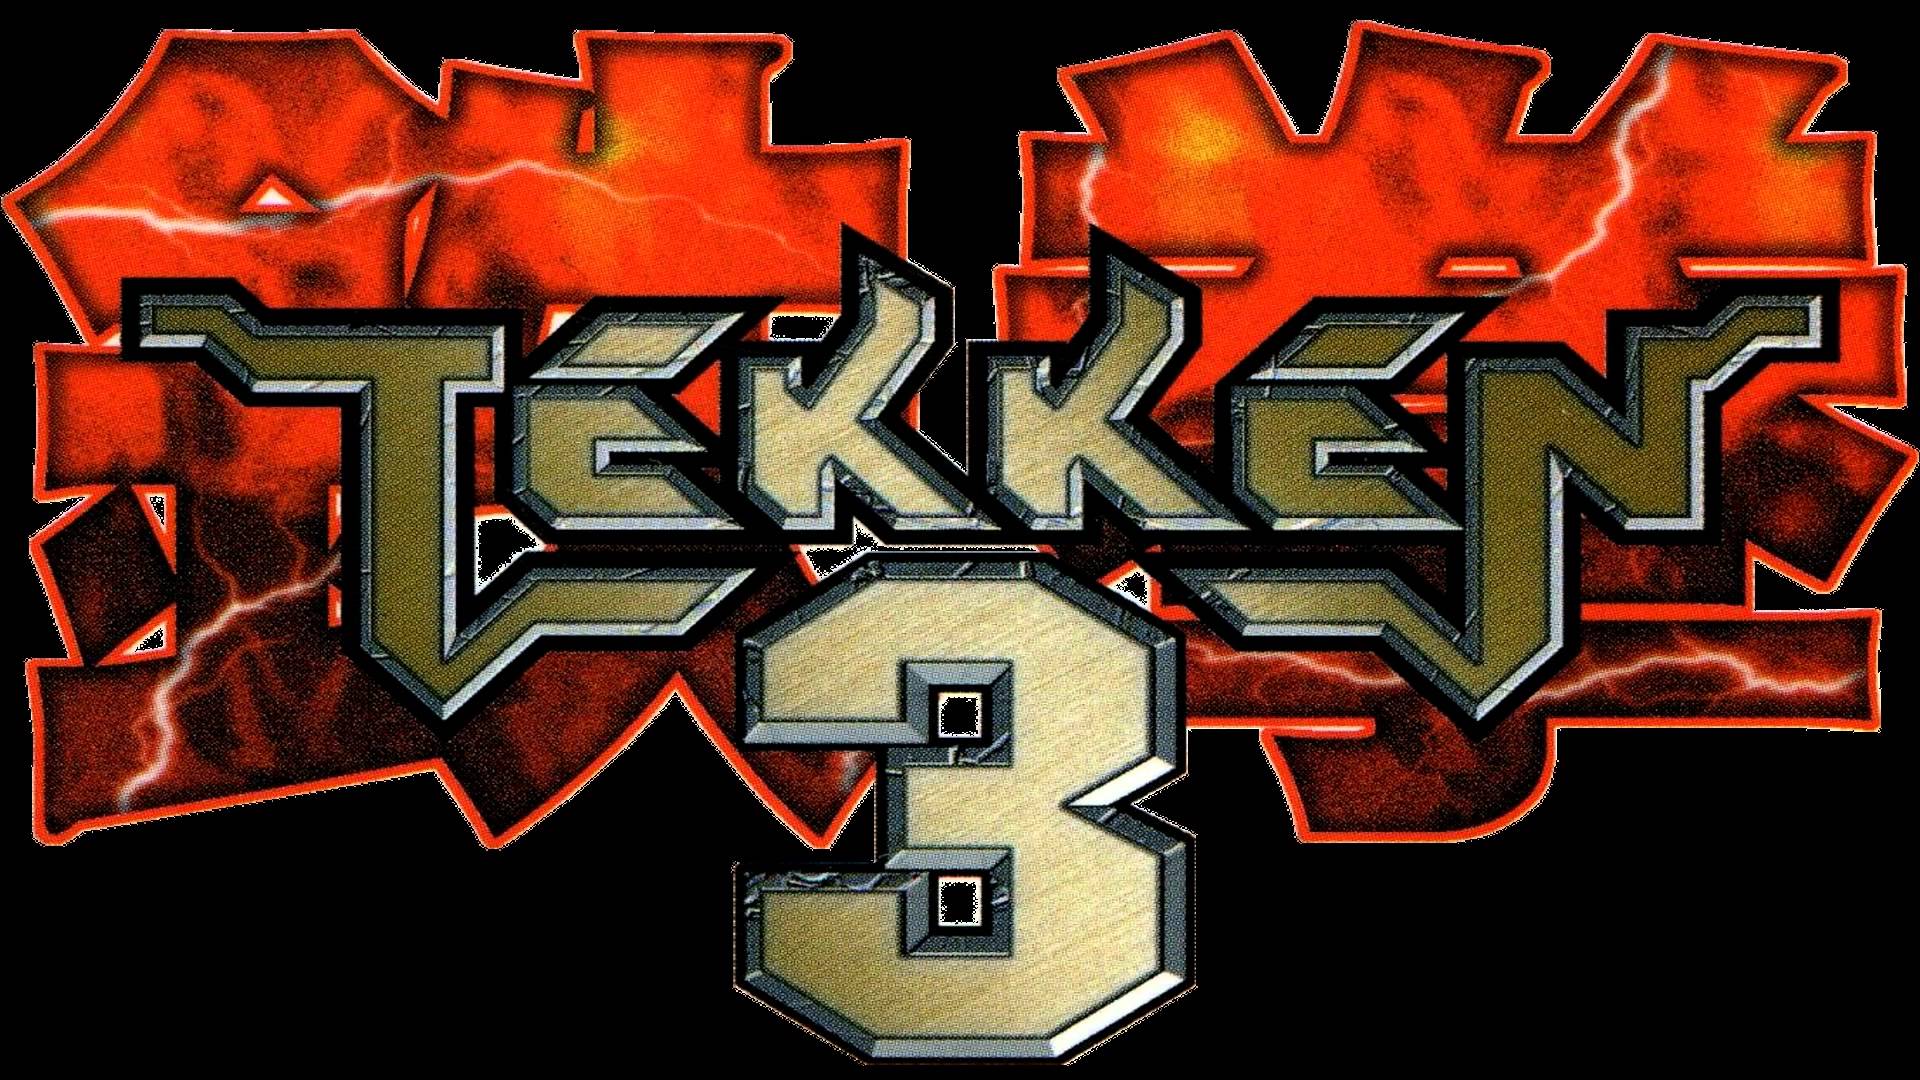 tekken 3 download for pc iso torrent